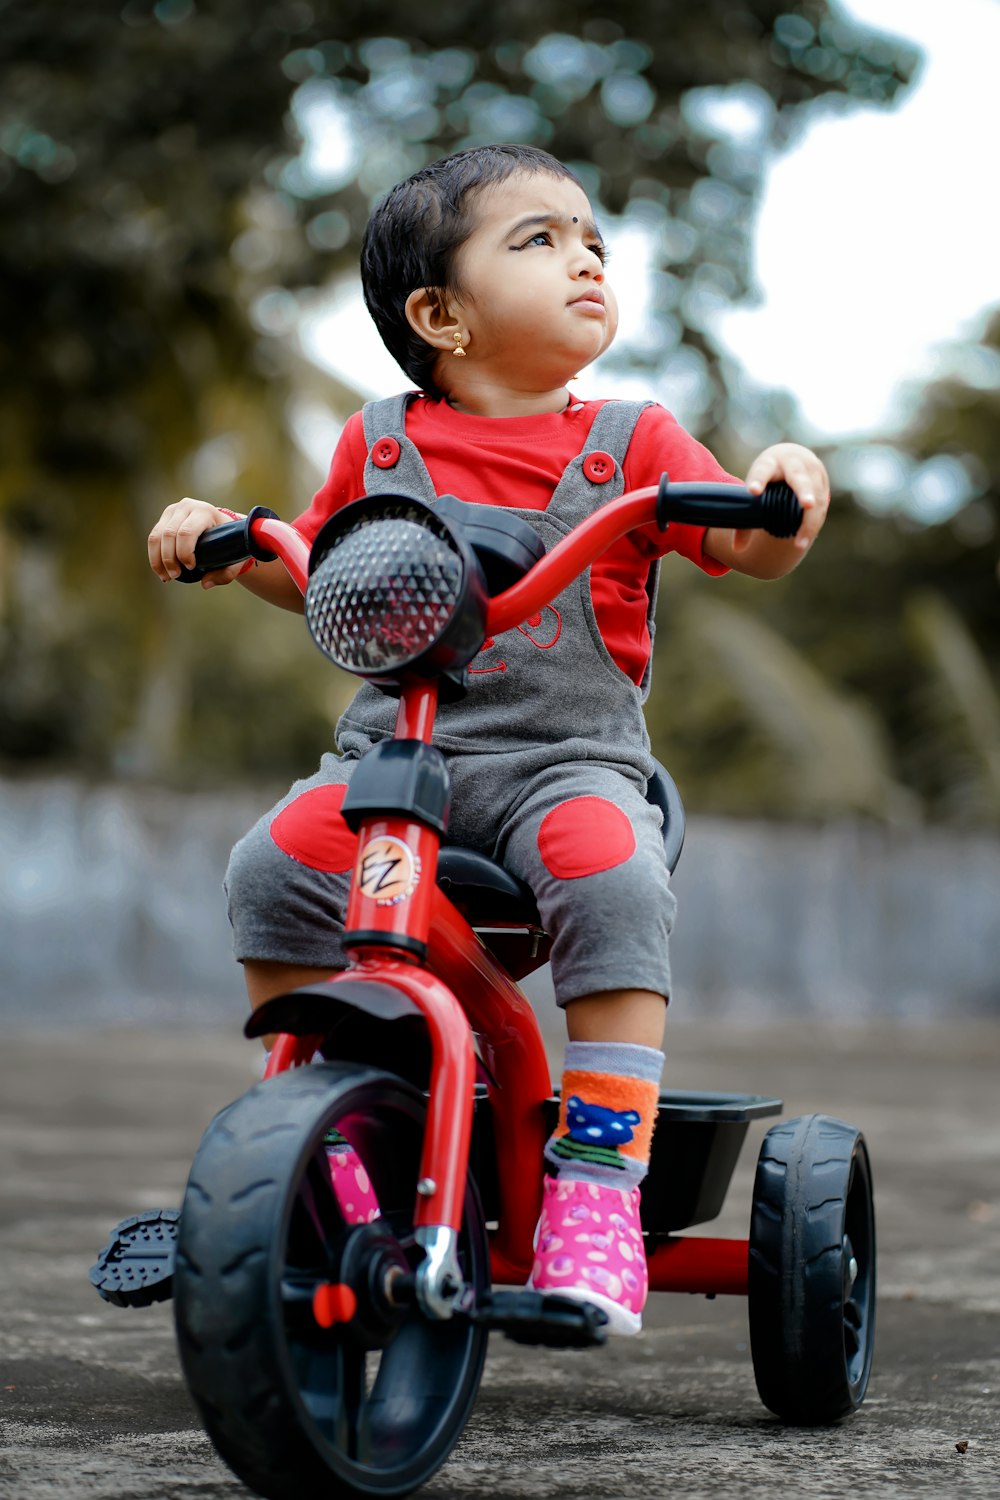 enfant en chemise rouge chevauchant un jouet de moto rouge et noir